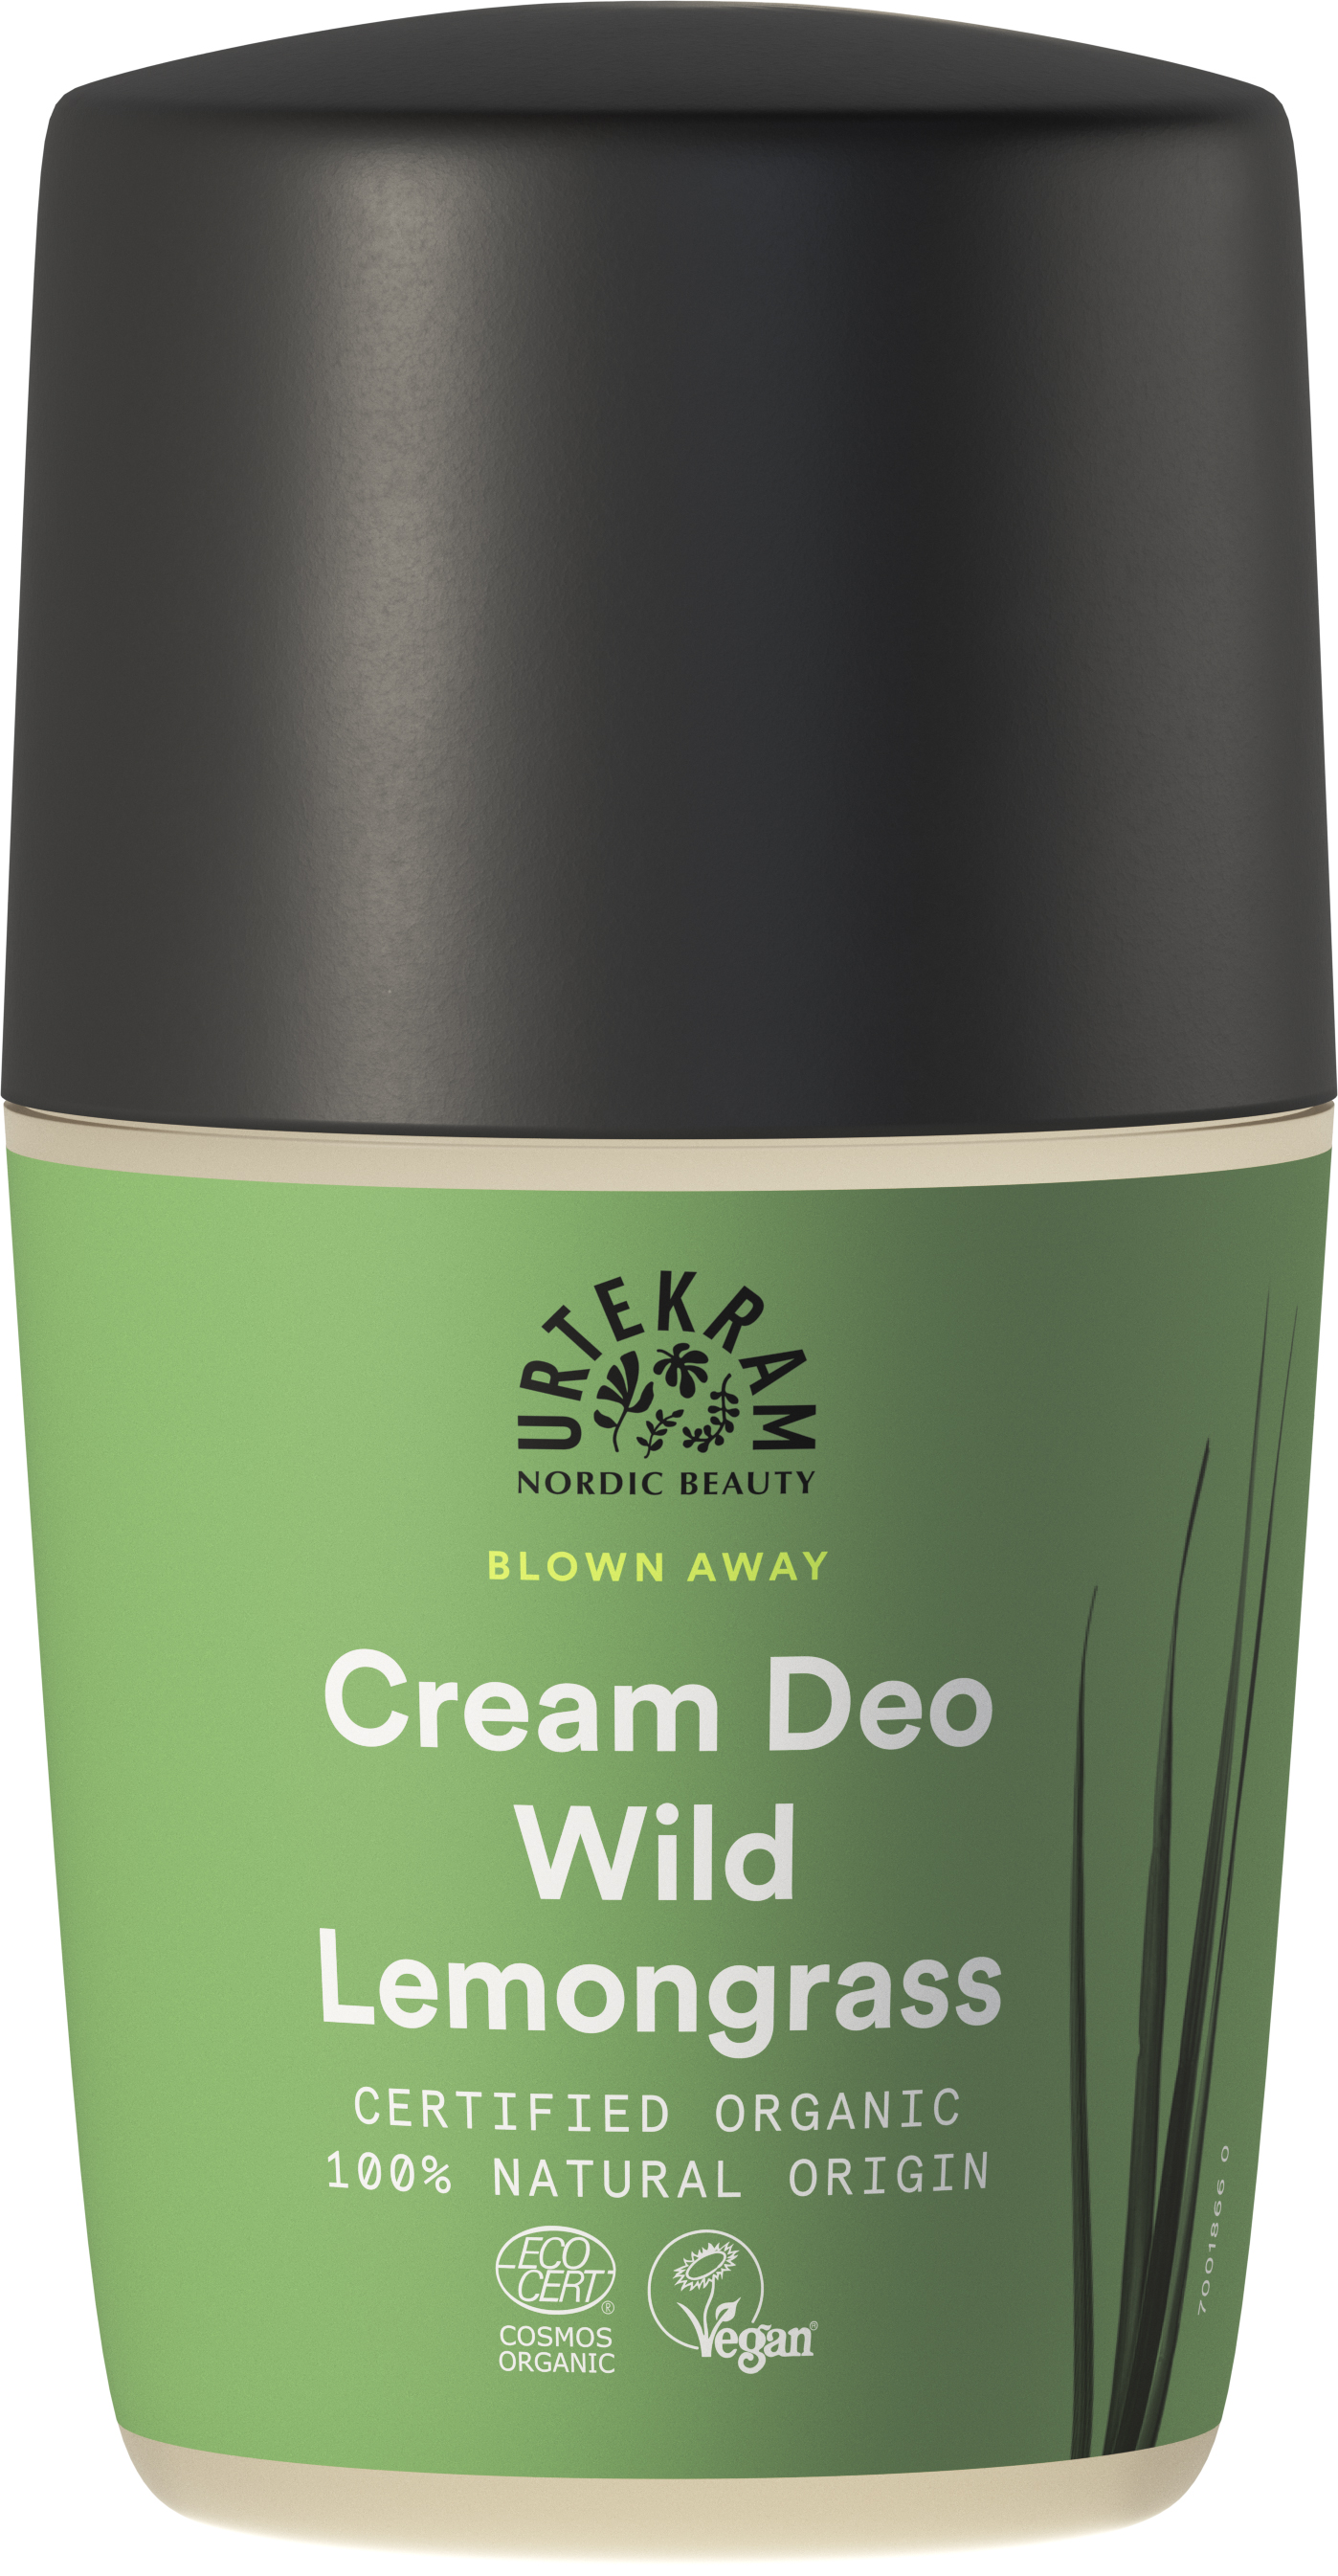 Urtekram Beauty Blown Aaway Wild Lemongrass Cream Deo Roll-on 50 ml